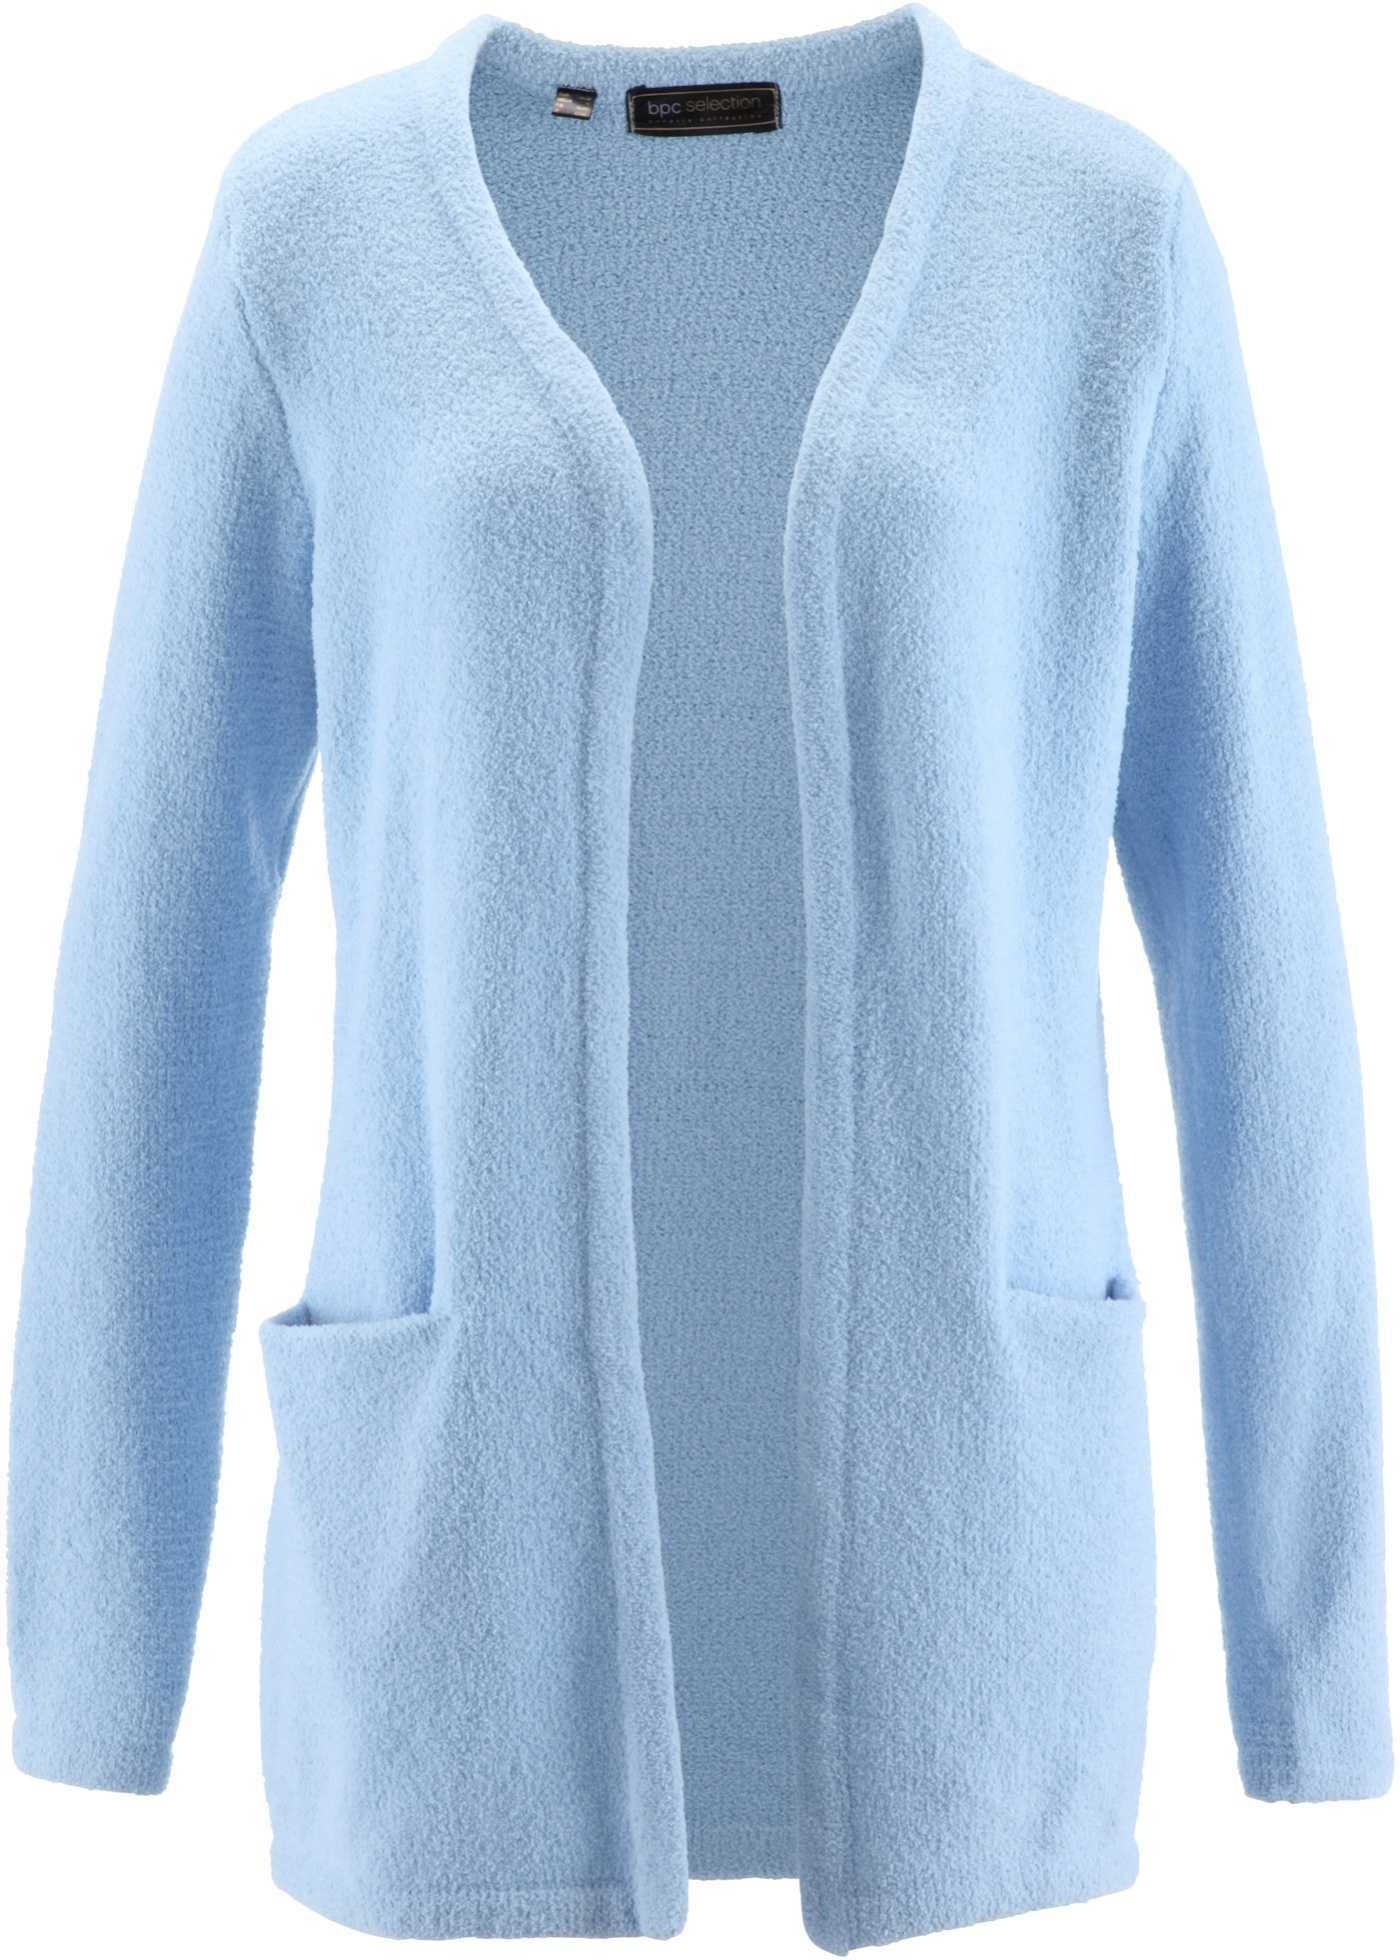 Sweter bez zapięcia długi kolor niebieski Rozmiar 42/44